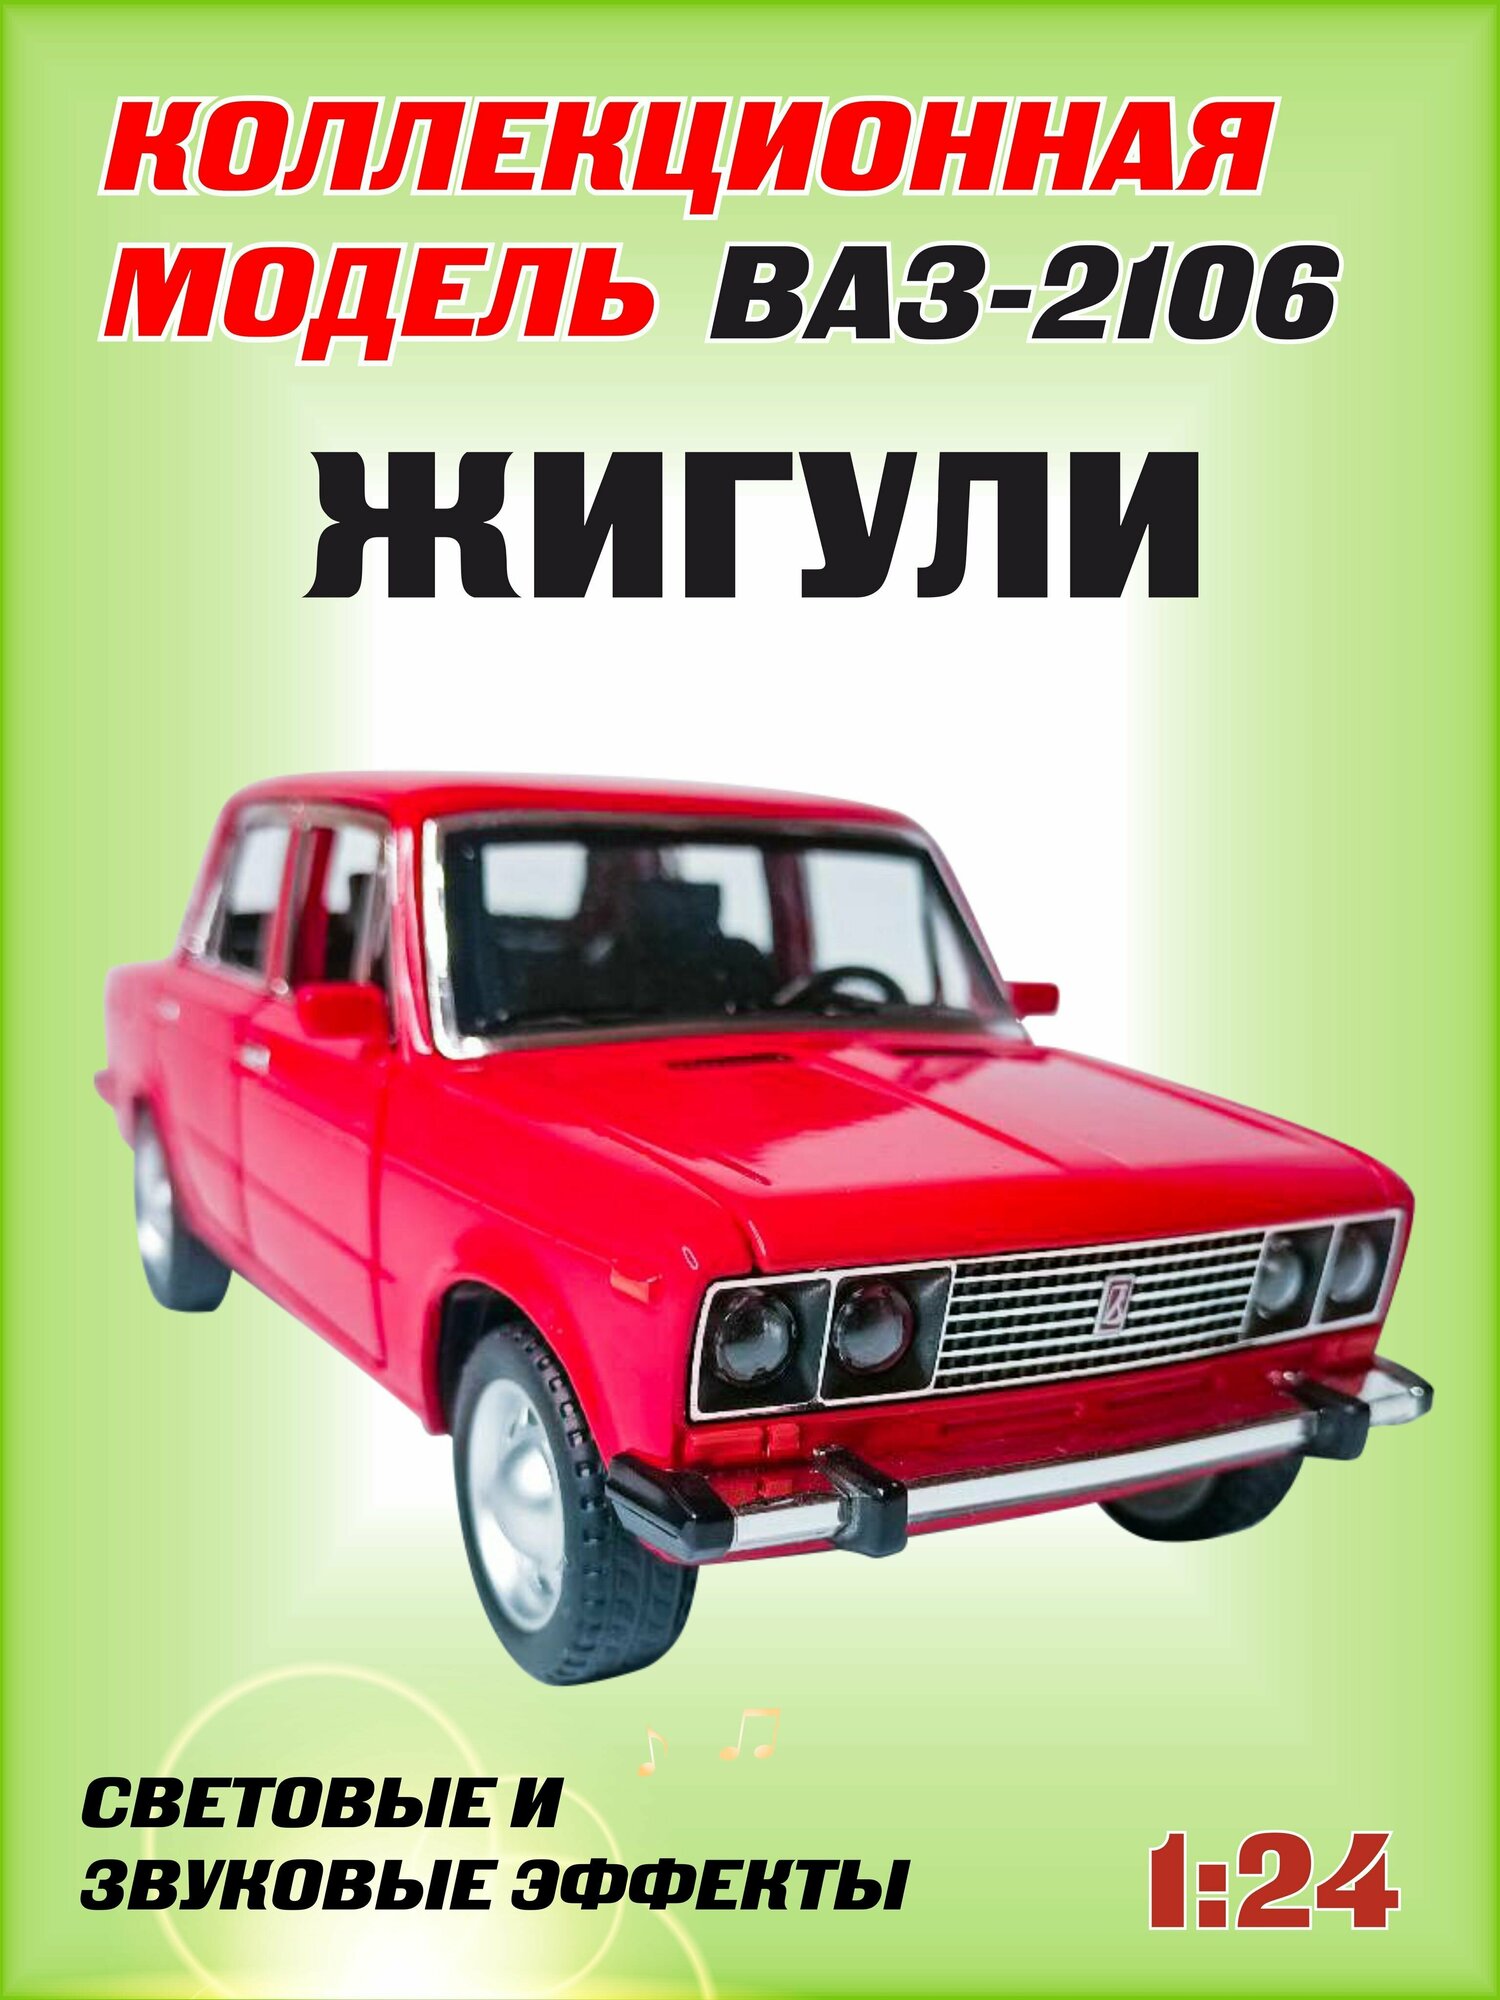 Коллекционная машинка игрушка металлическая Жигули ВАЗ 2106 для мальчиков масштабная модель 1:24 красный